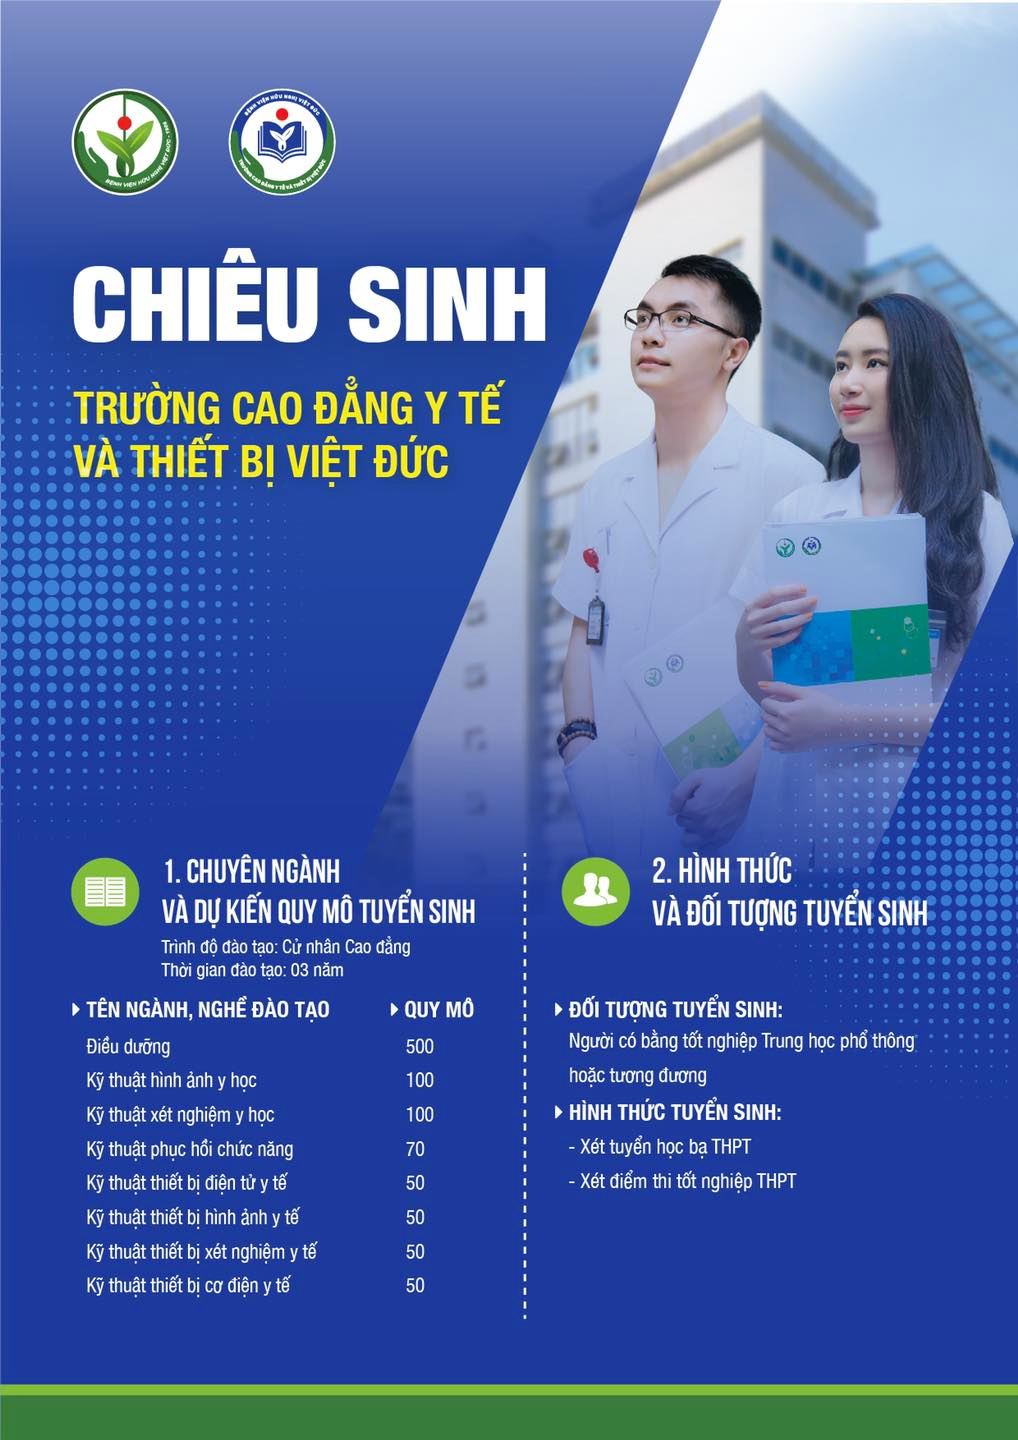 Chiêu sinh Trường Cao đẳng Y tế và Thiết bị Việt Đức - Bệnh viện Việt  ĐứcBệnh viện Việt Đức